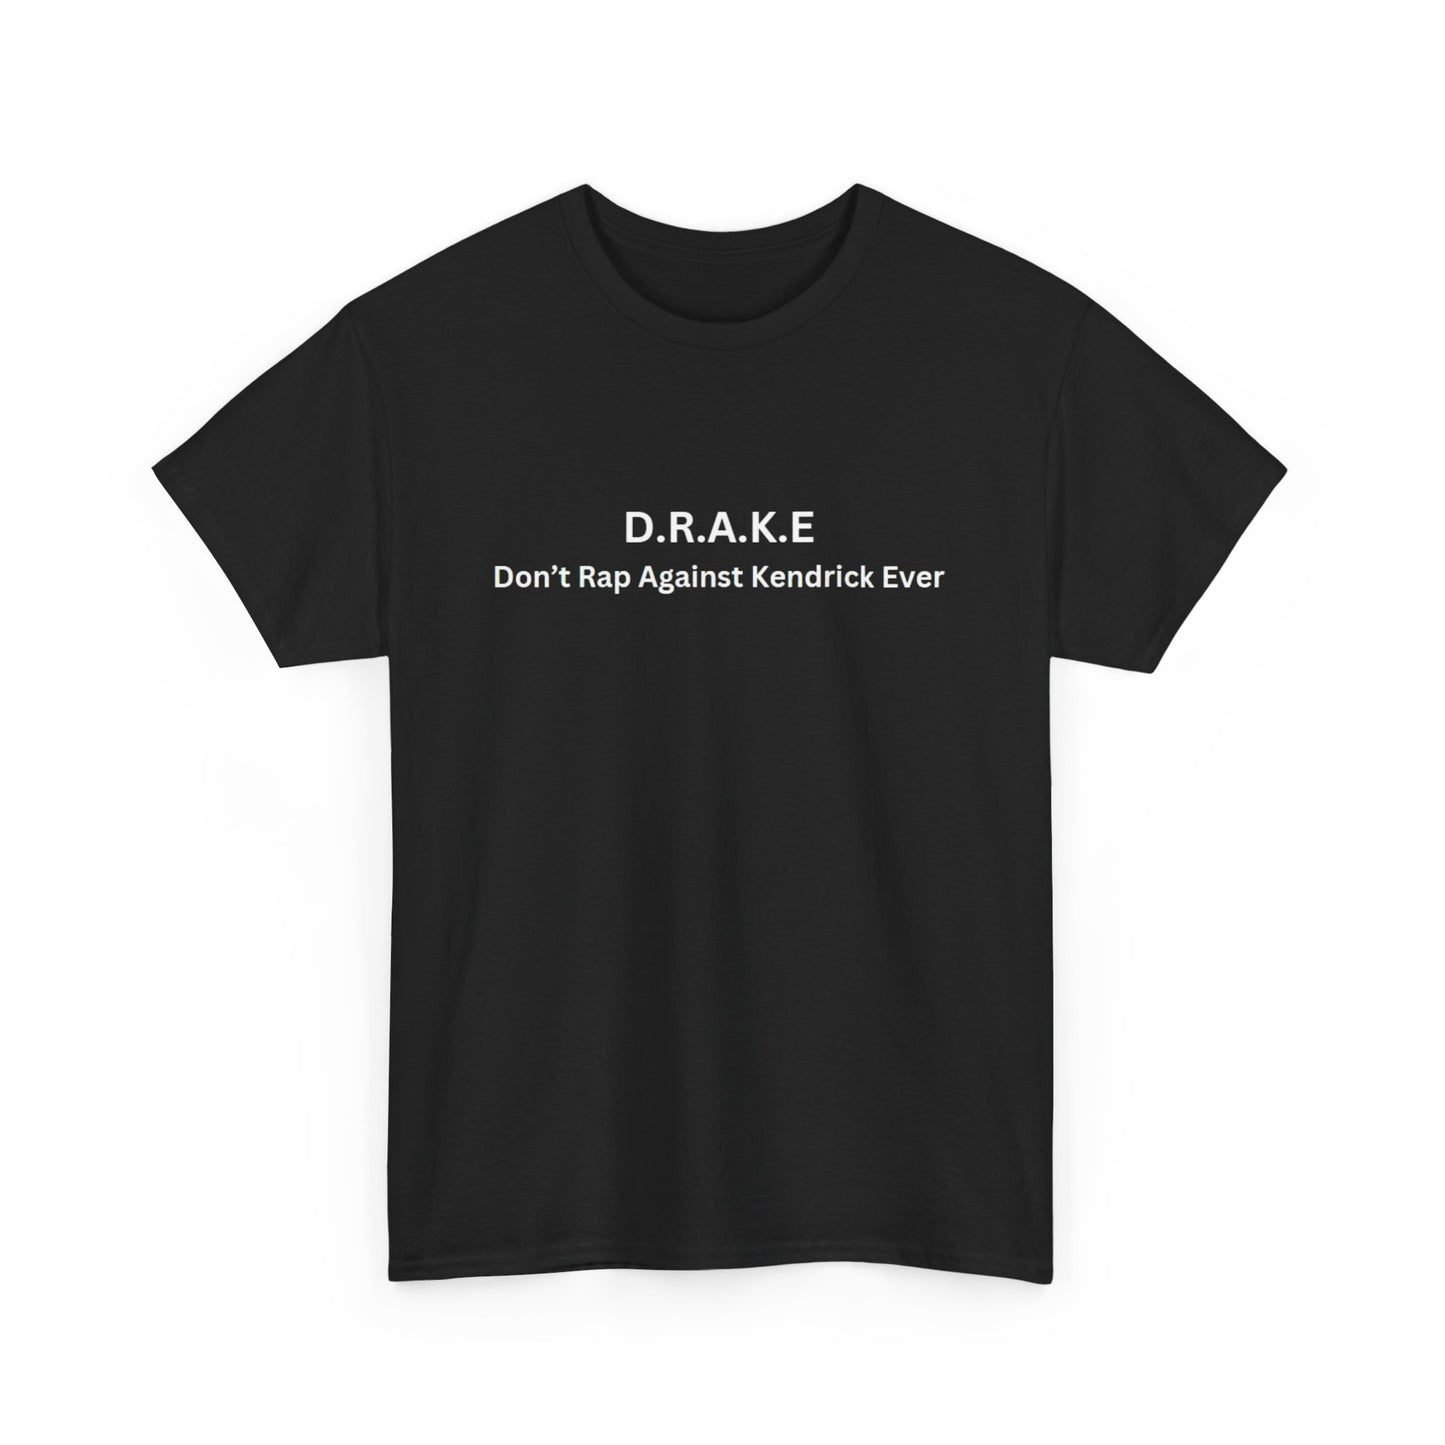 D.R.A.K.E T-shirt